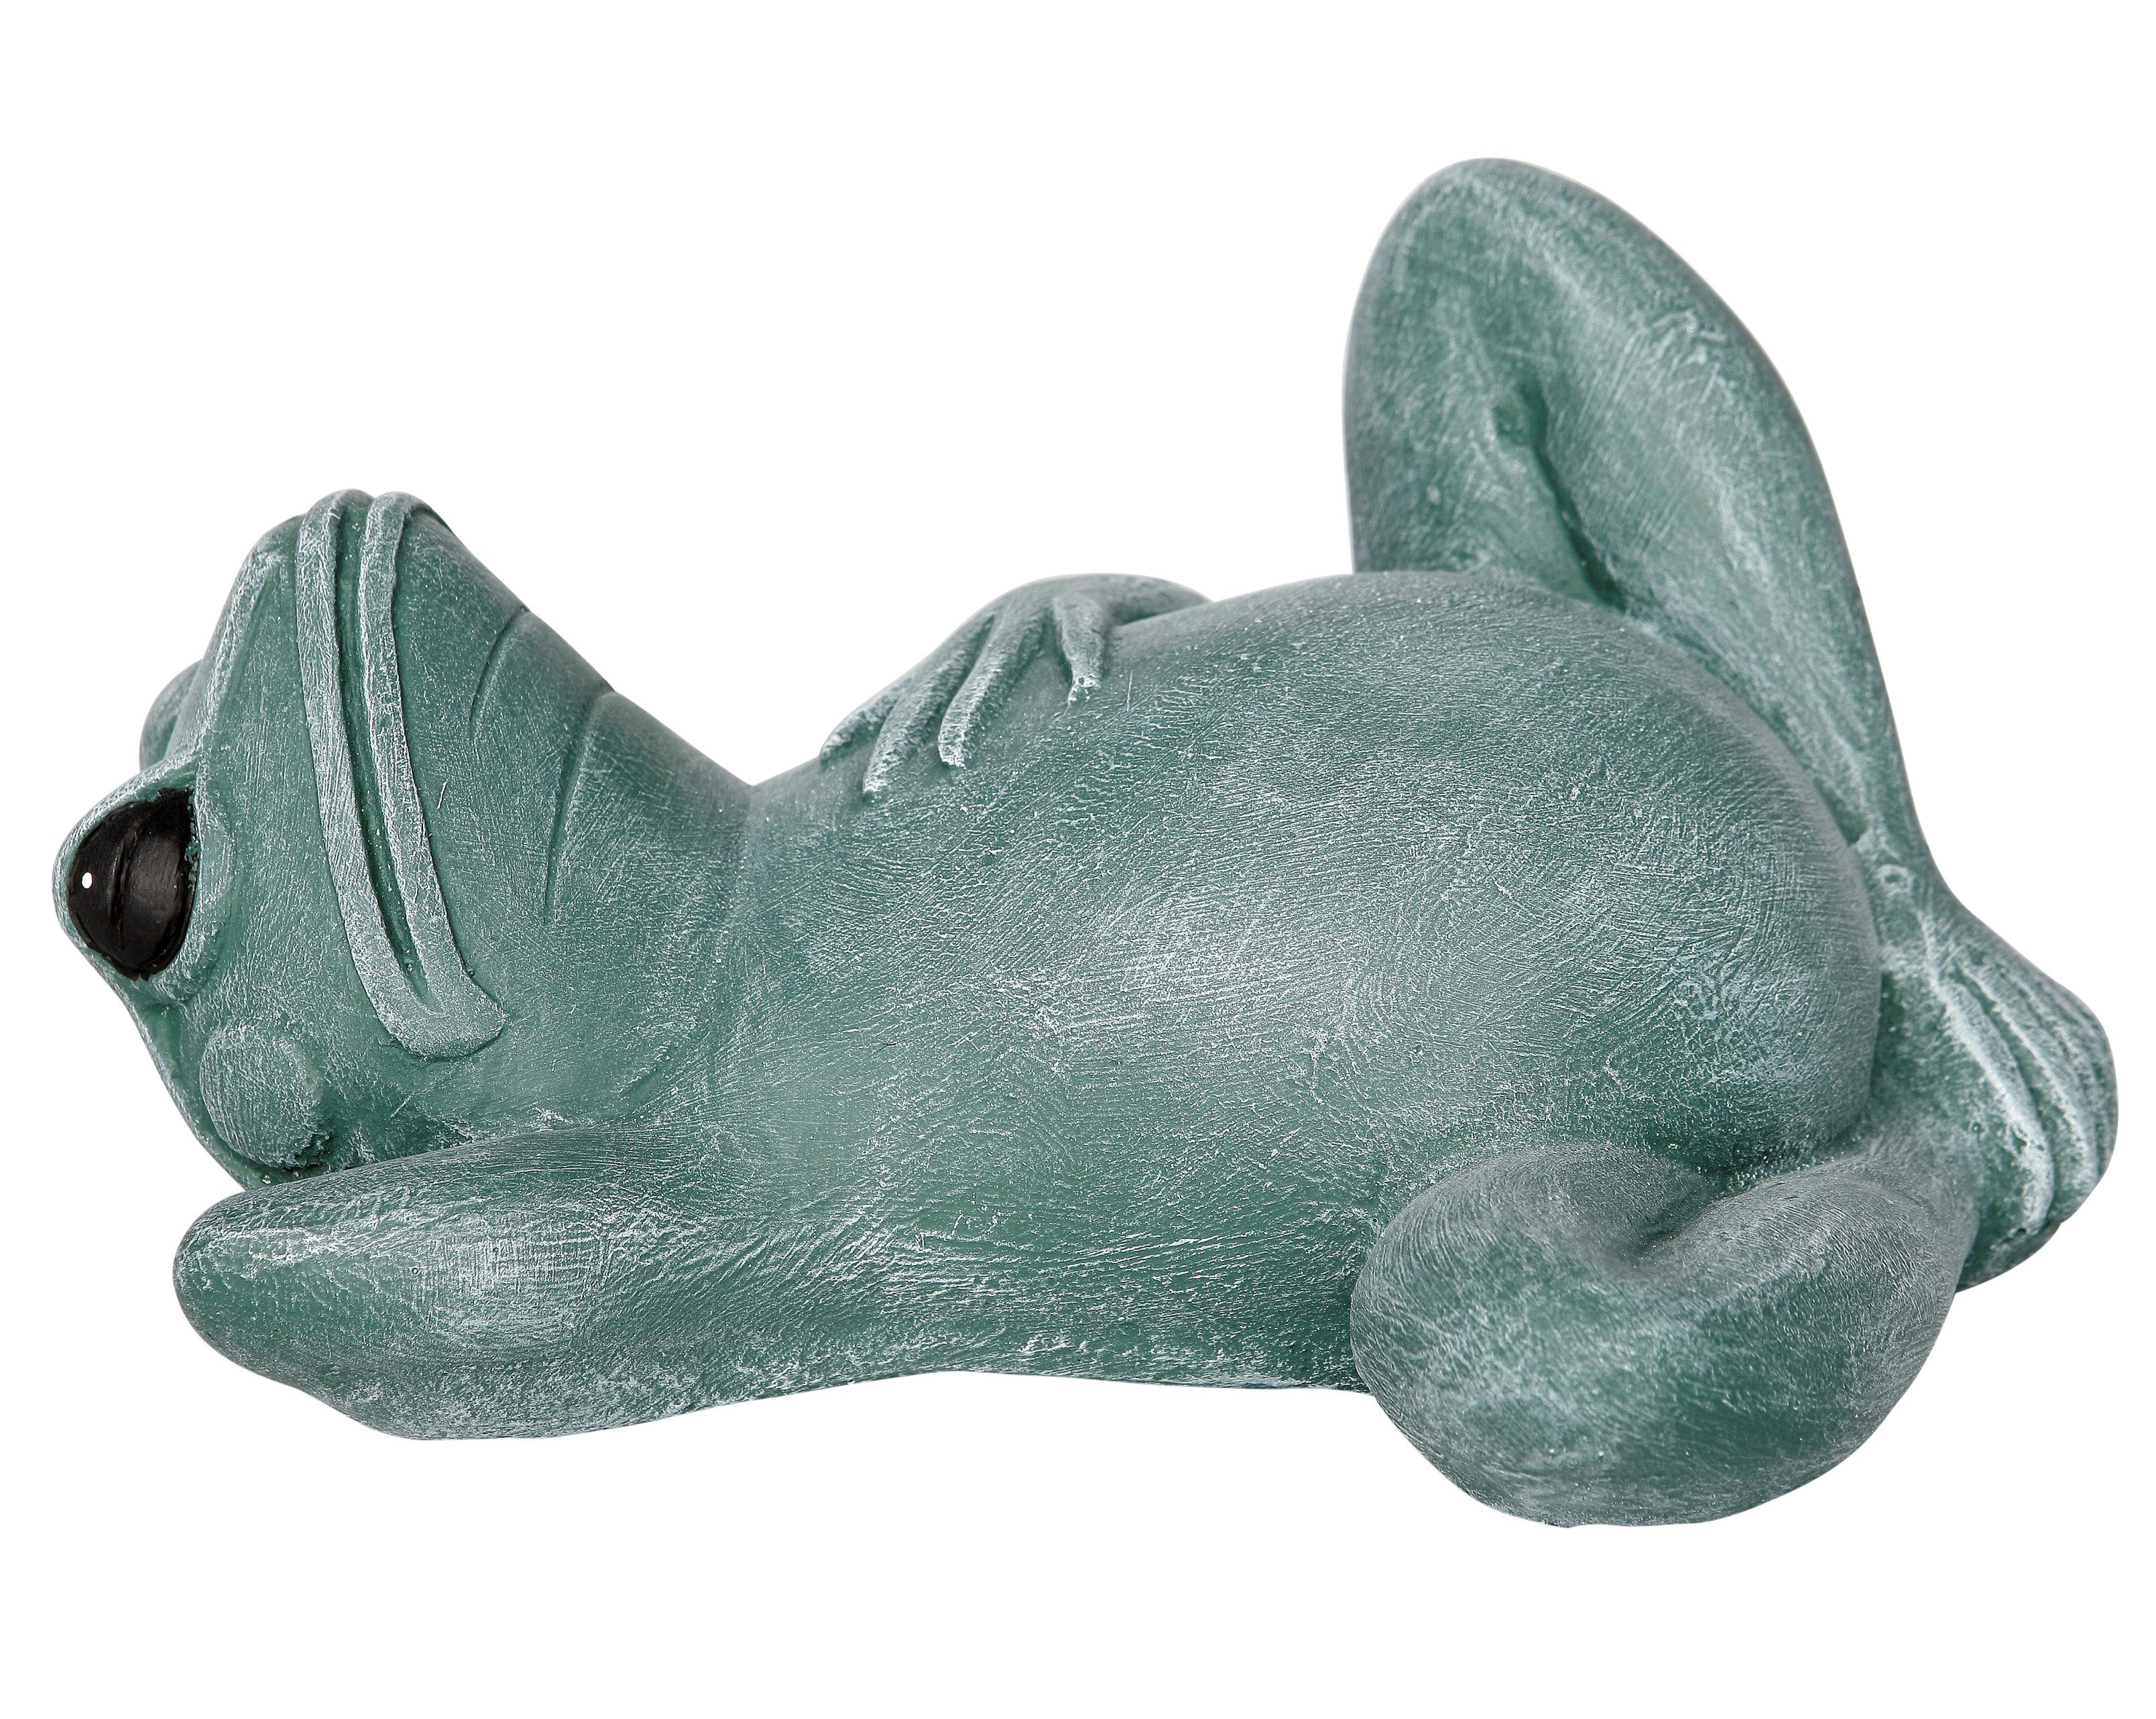 Tiefes Kunsthandwerk Dekofigur Steinfigur Frosch liegend - als Dekofigur für Haus und Garten, frostsicher, winterfest, Made in Germany grün